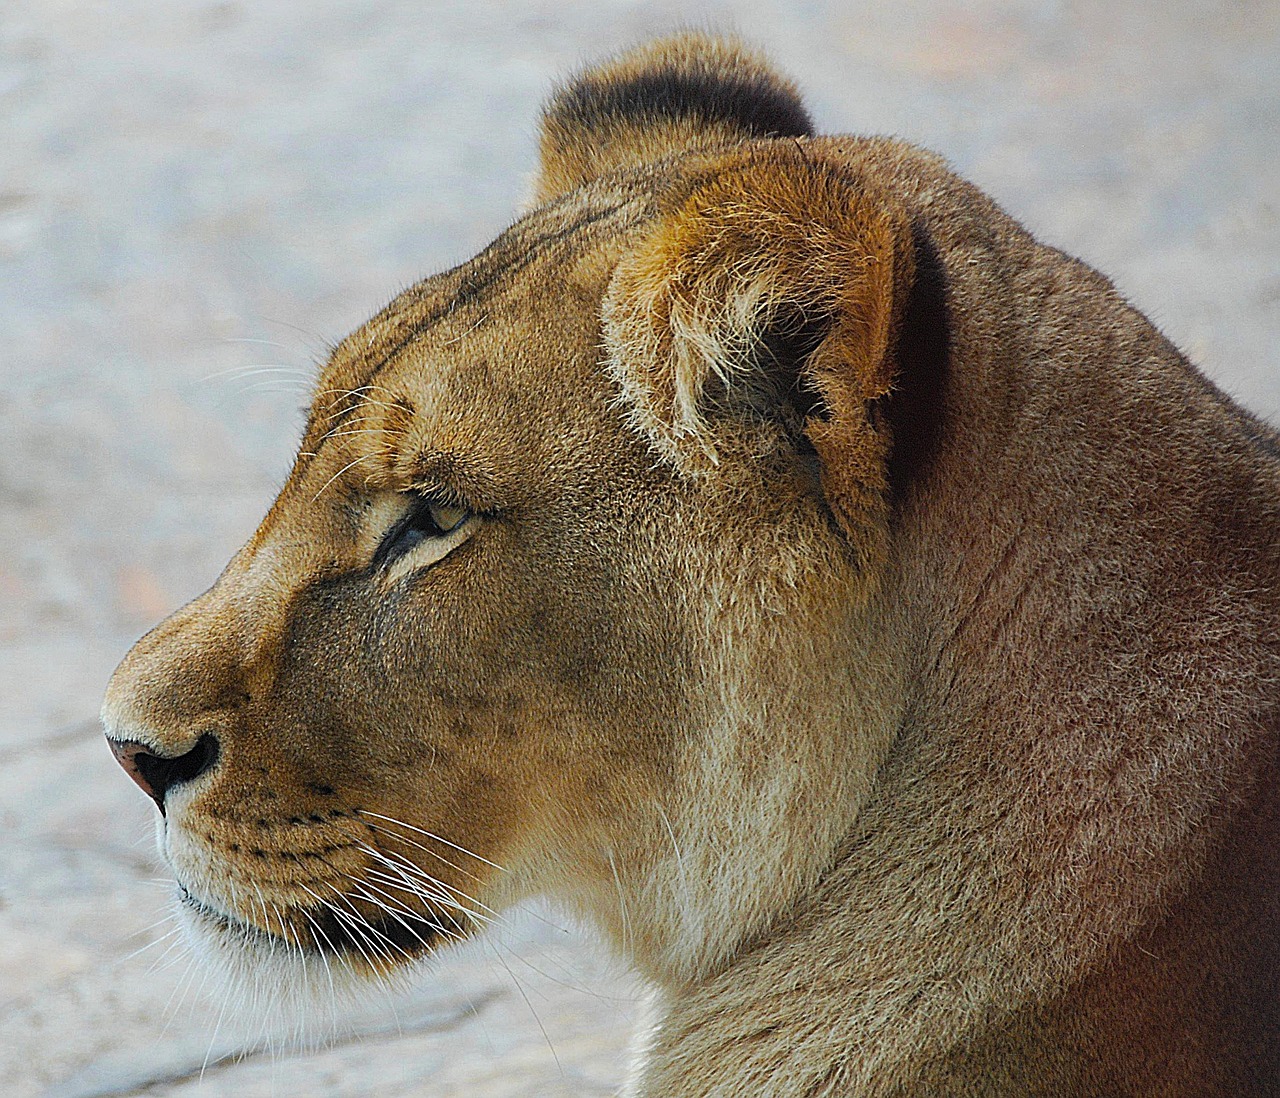 Image - lion close zoo cat portrait